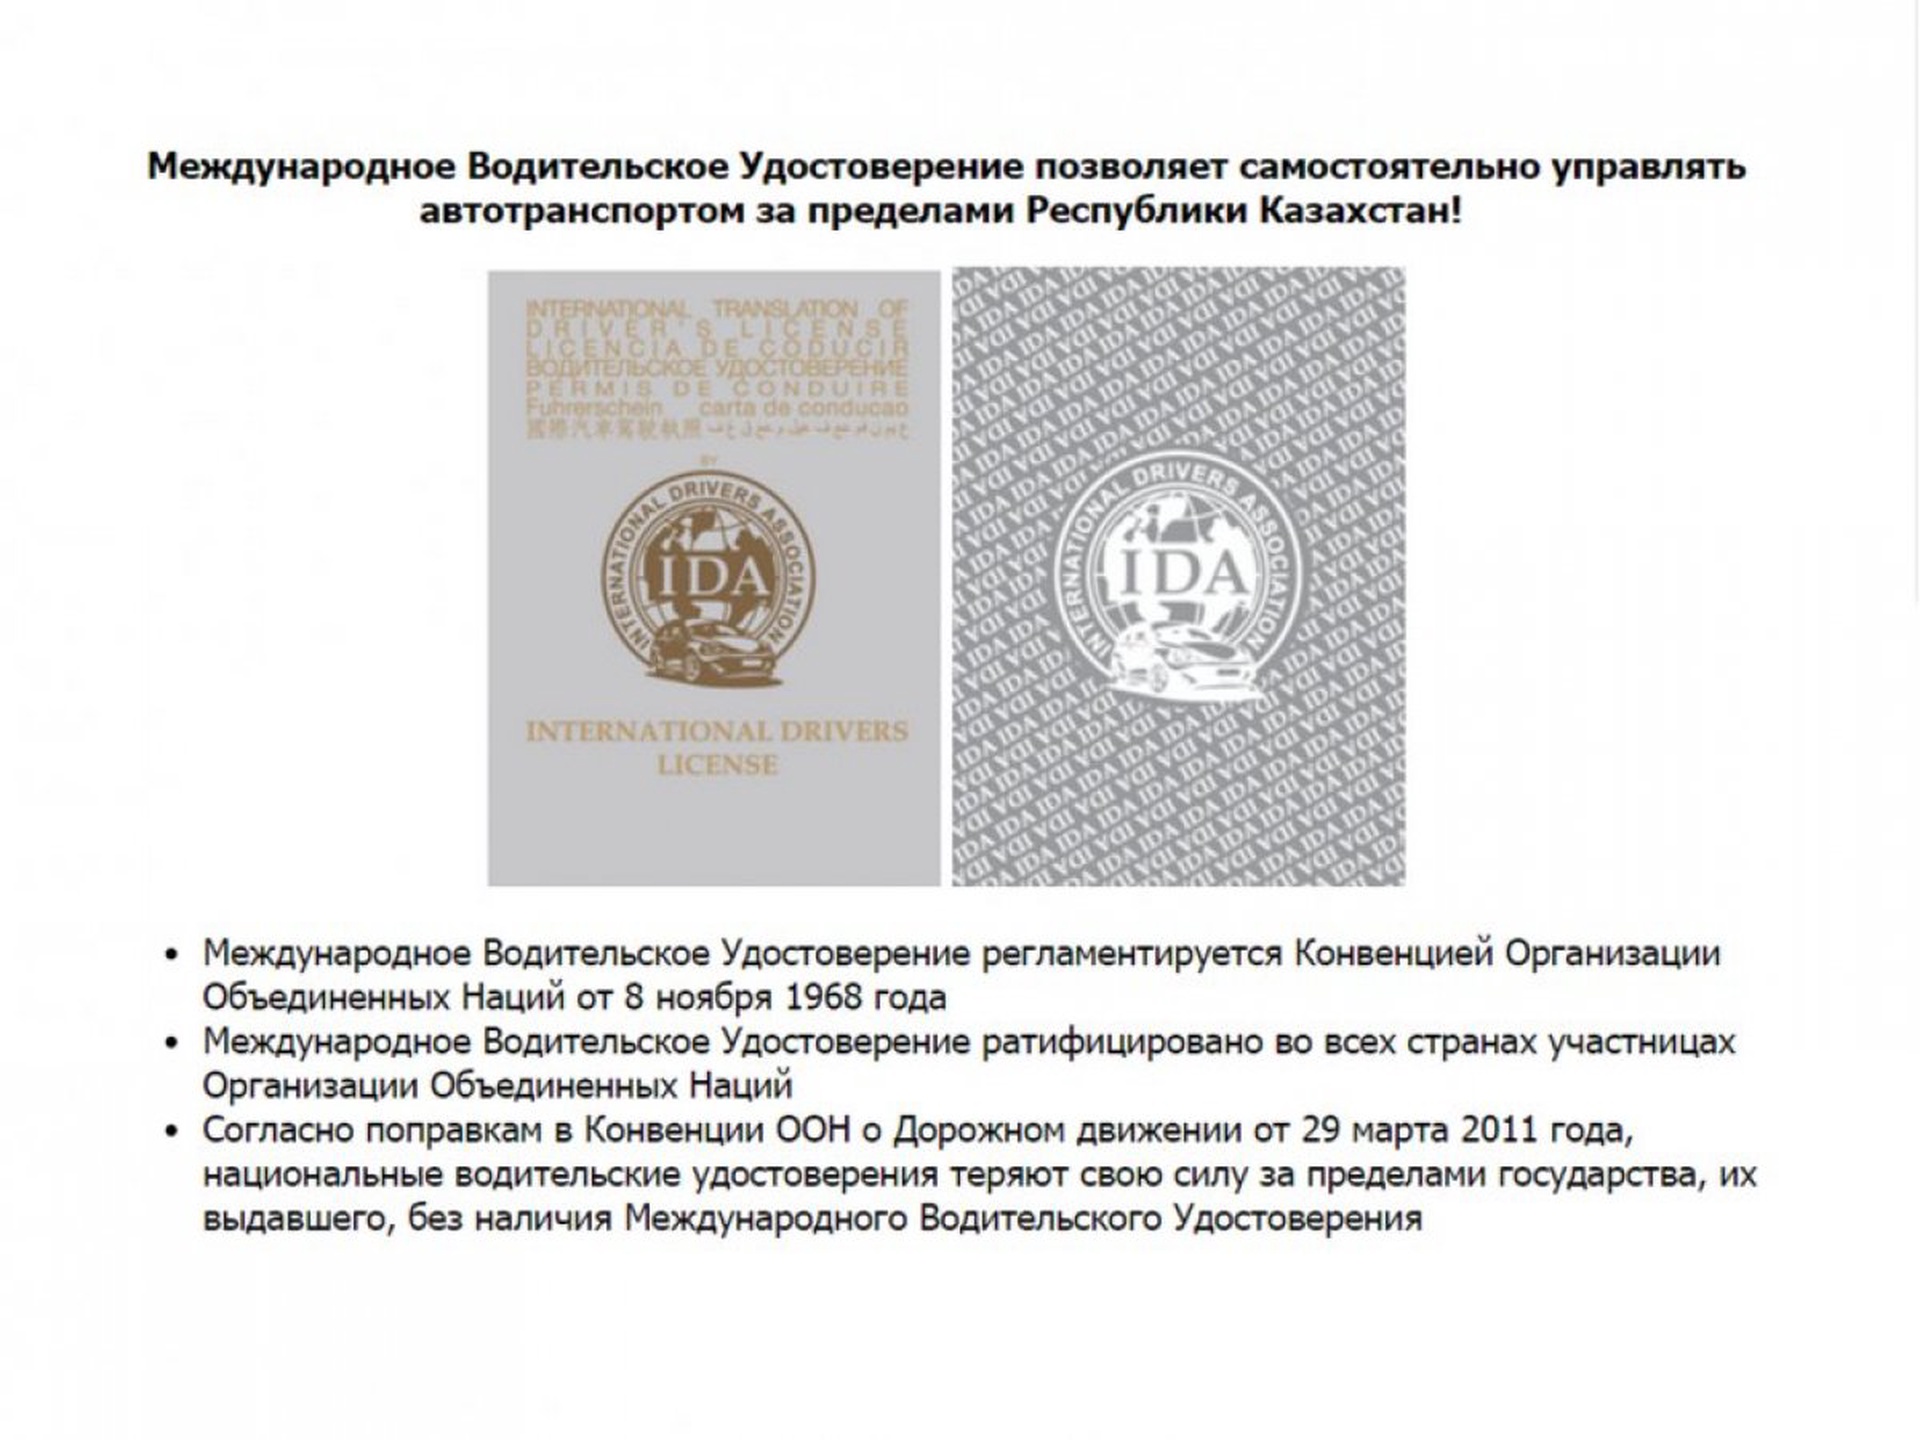 водительское удостоверение в казахстане